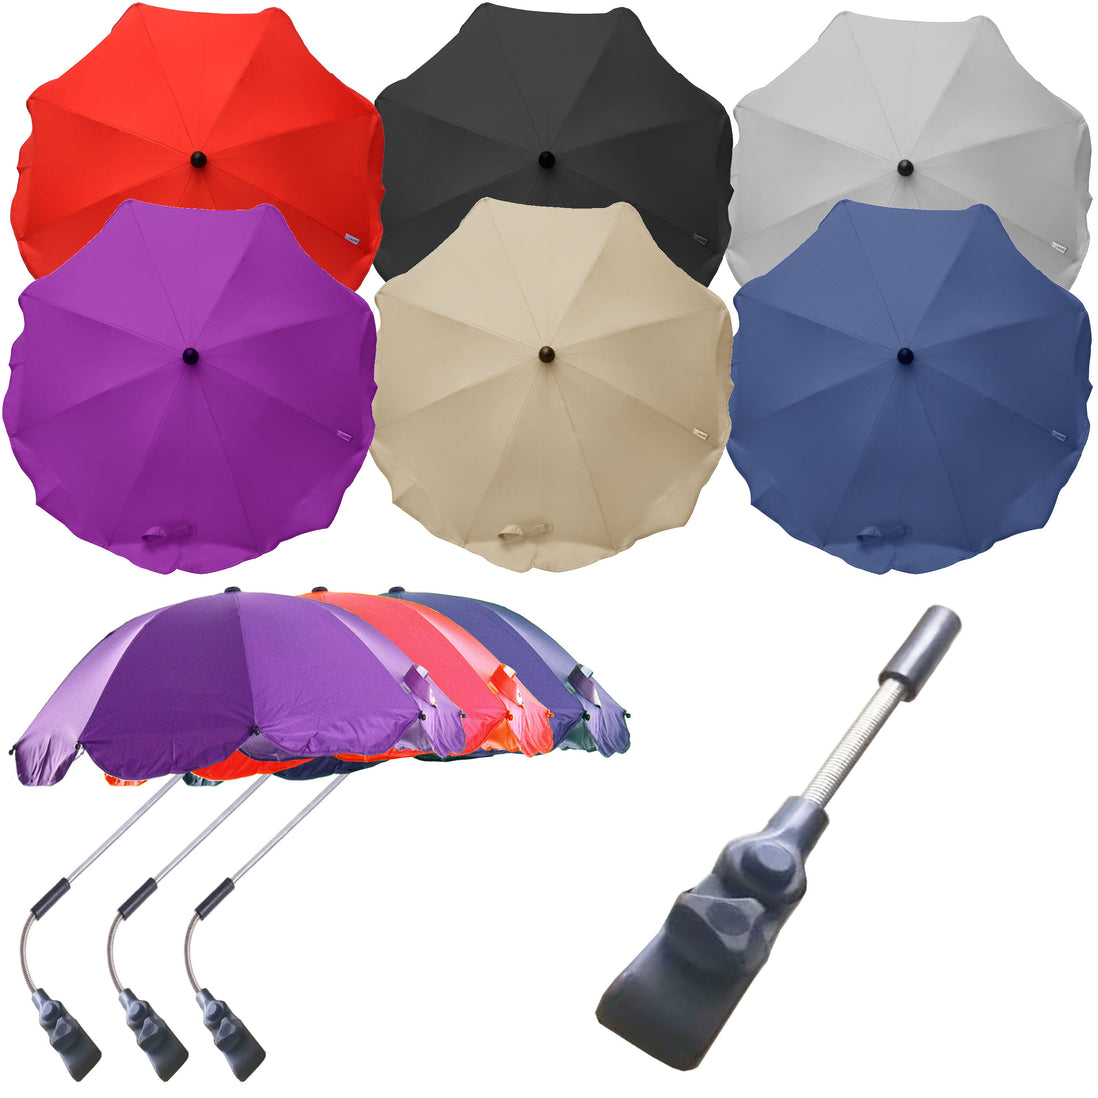 umbrella pushchair uk